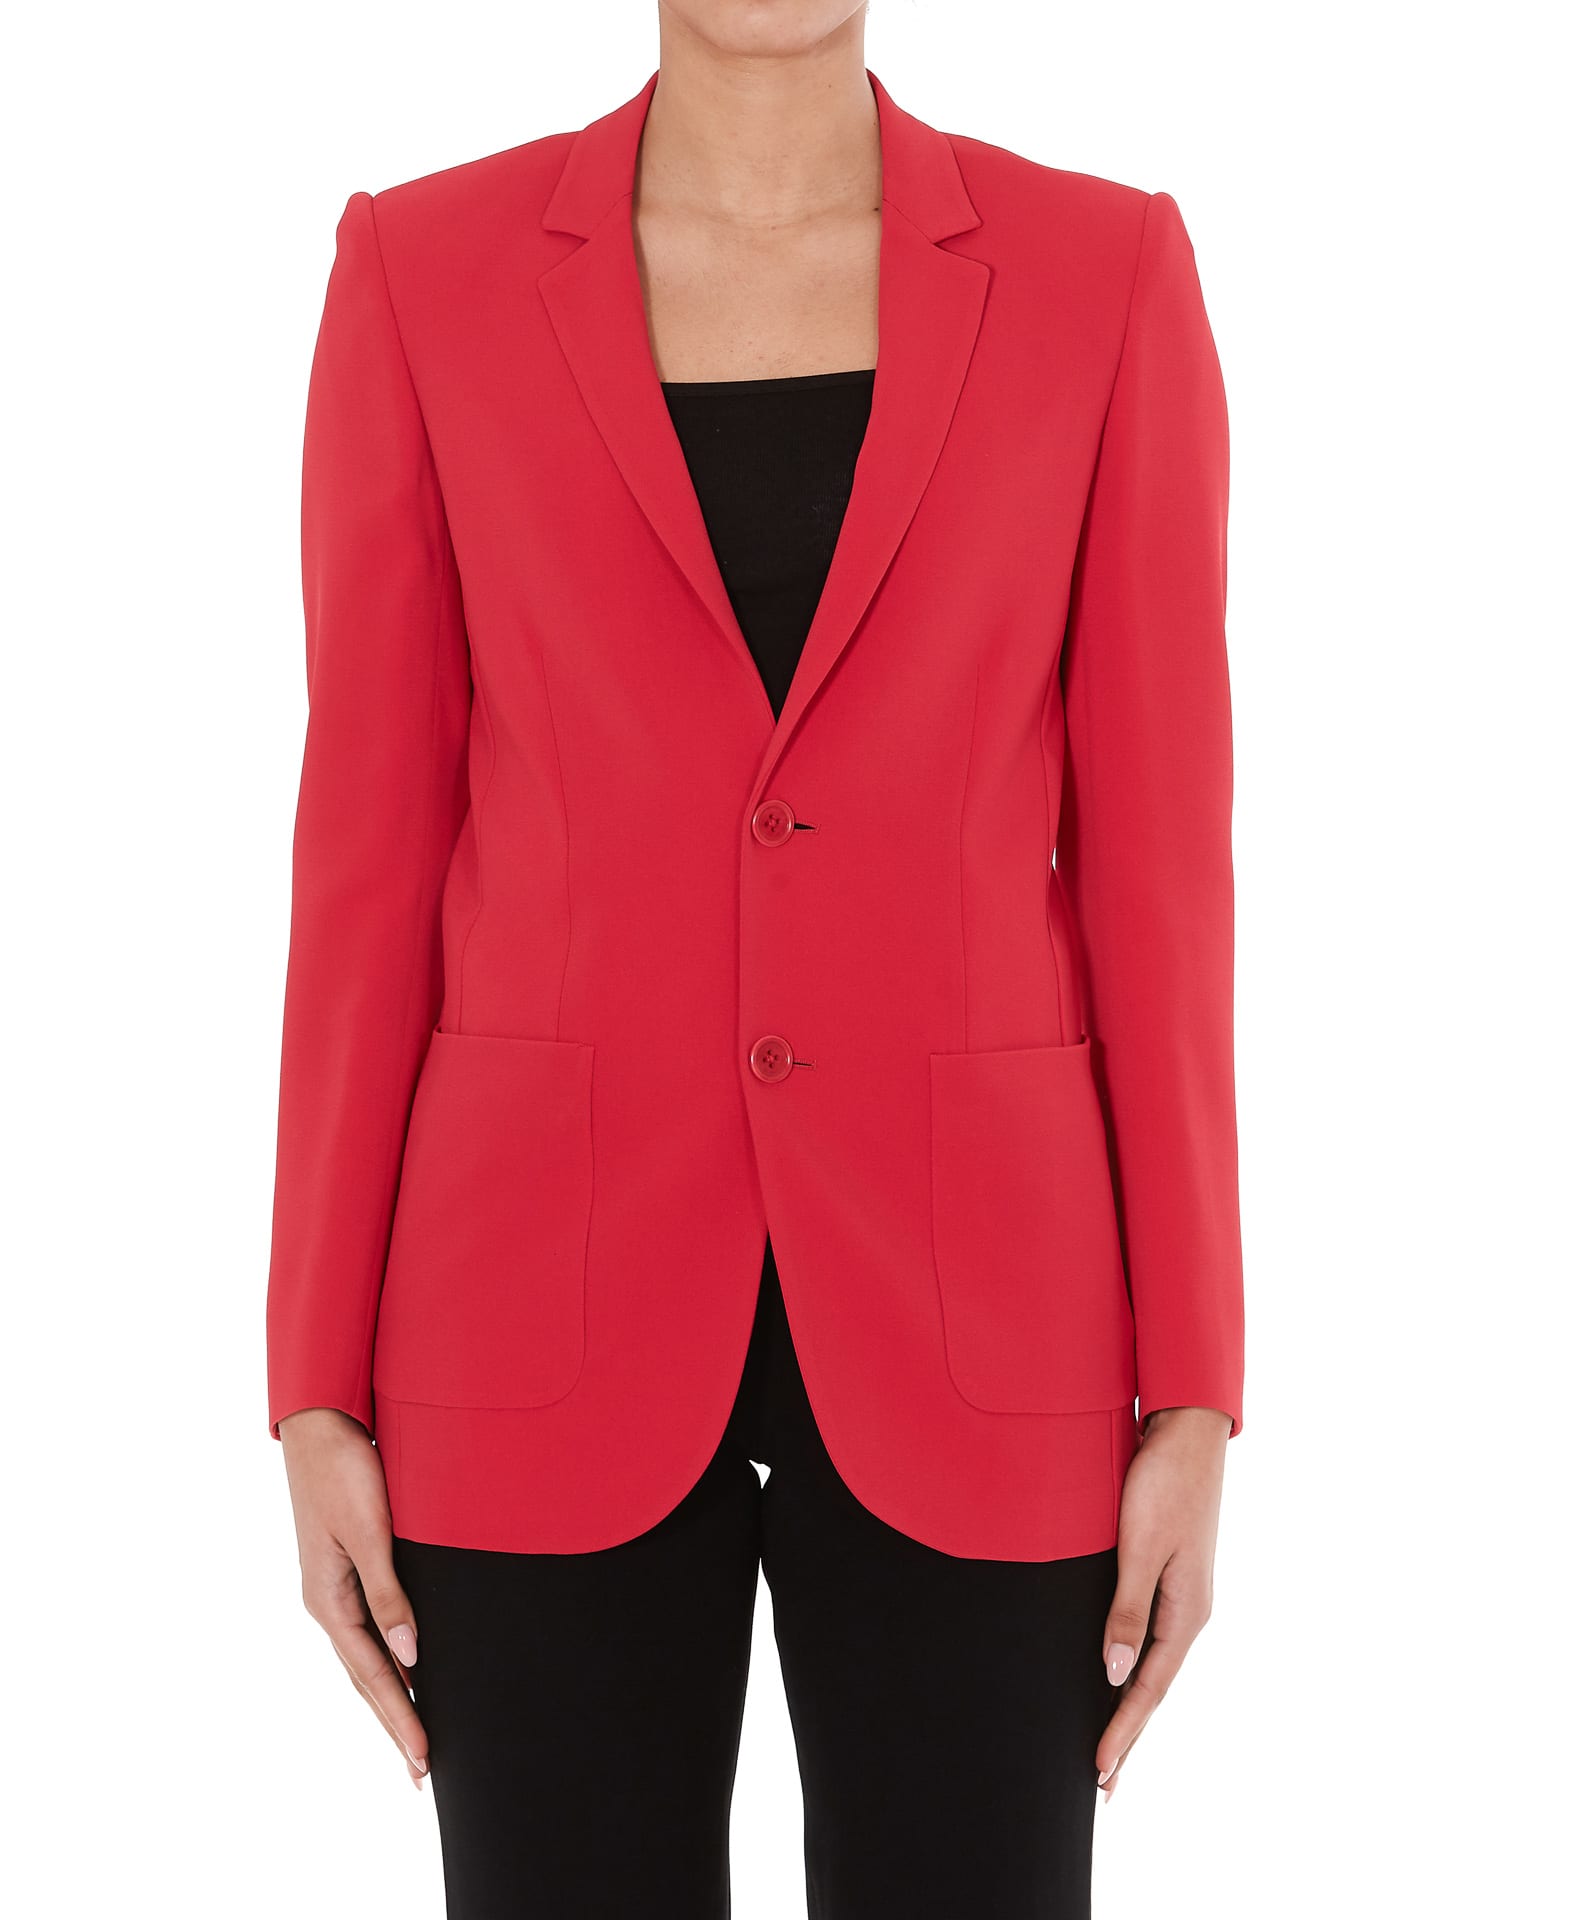 Valentino Red Suit Sale, 60% OFF | centro-innato.com